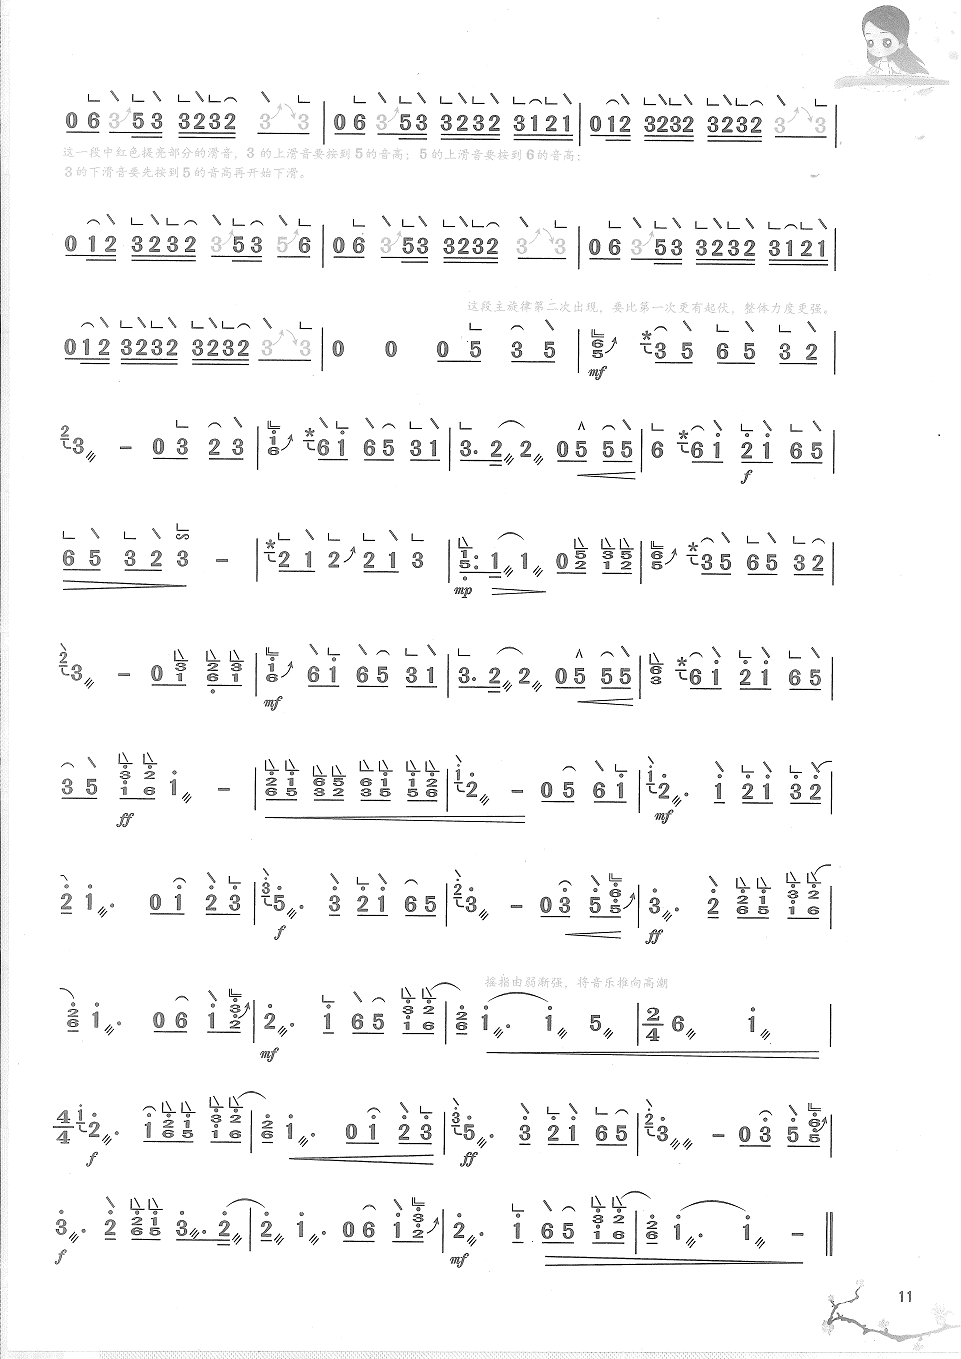 周杰伦《兰亭序》古筝演奏完整版简谱及伴奏